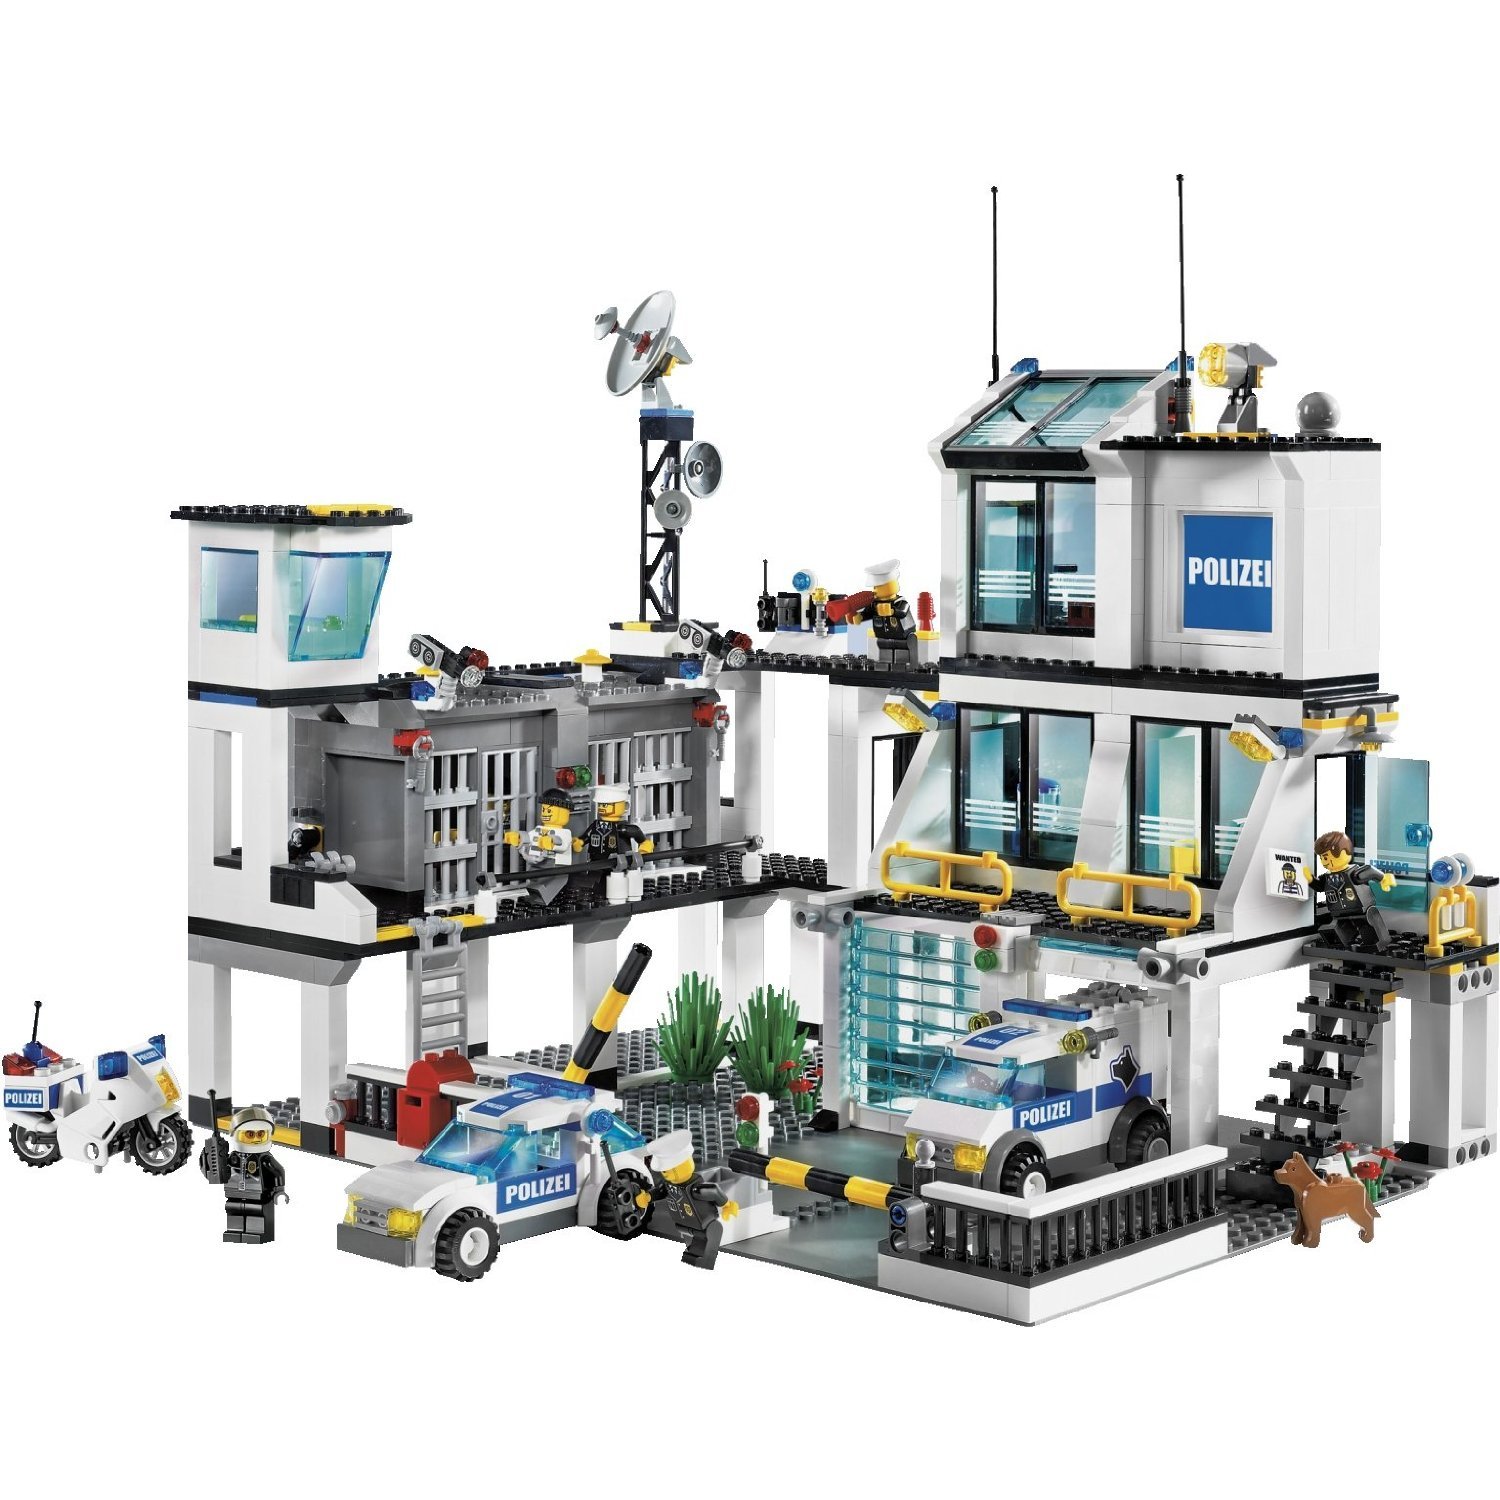 LEGO City Police Set 7498 US |